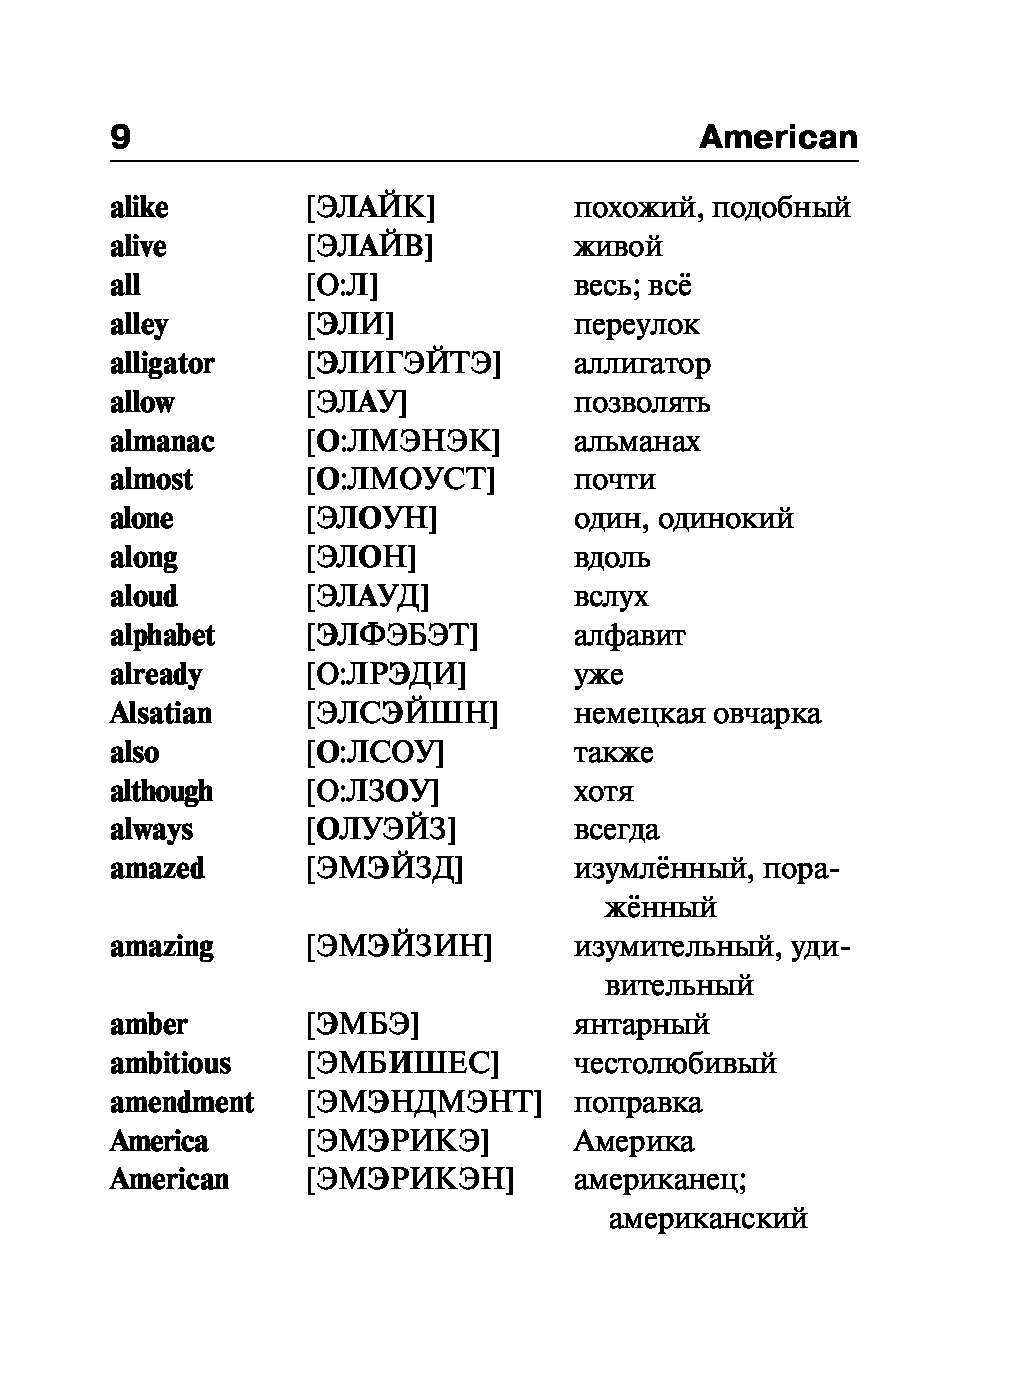 Словарь английских слов с транскрипцией